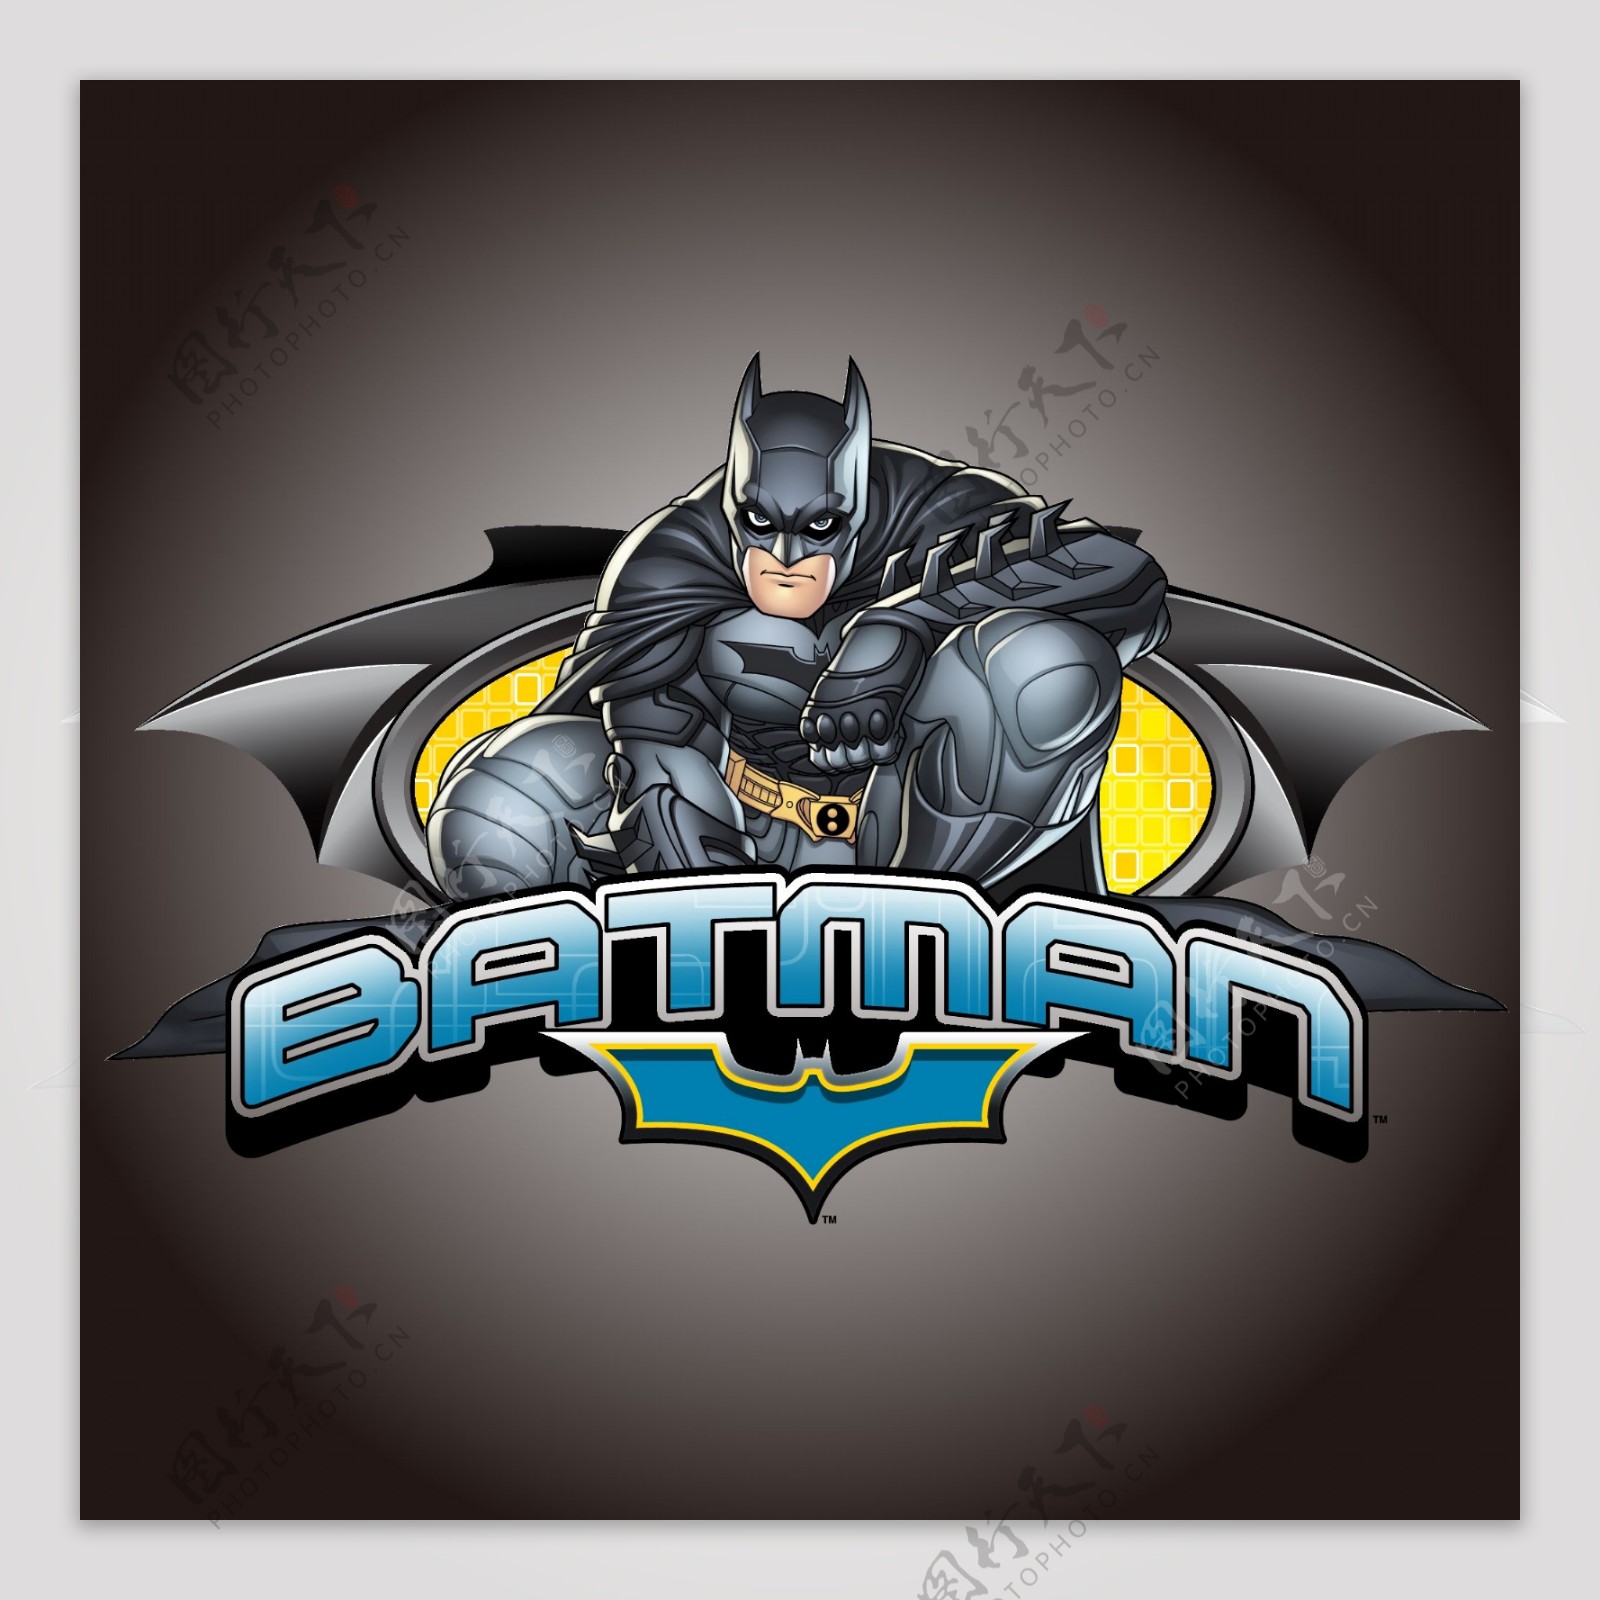 印花矢量图卡通形象蝙蝠侠文字英文免费素材